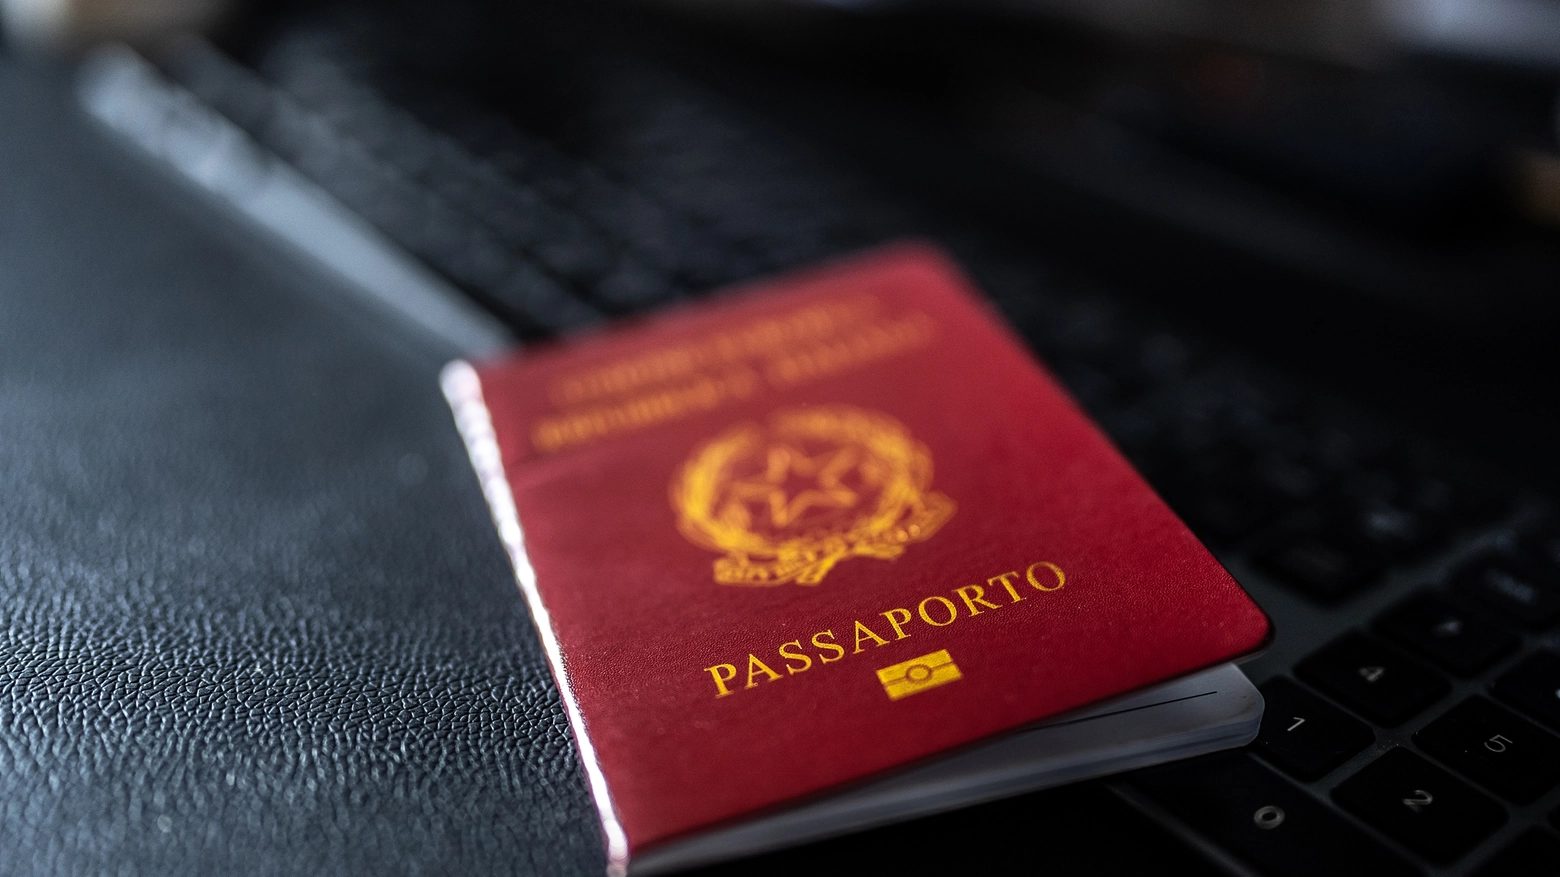 Il passaporto necessario per viaggiare fuori dall'Italia e dall'Europa